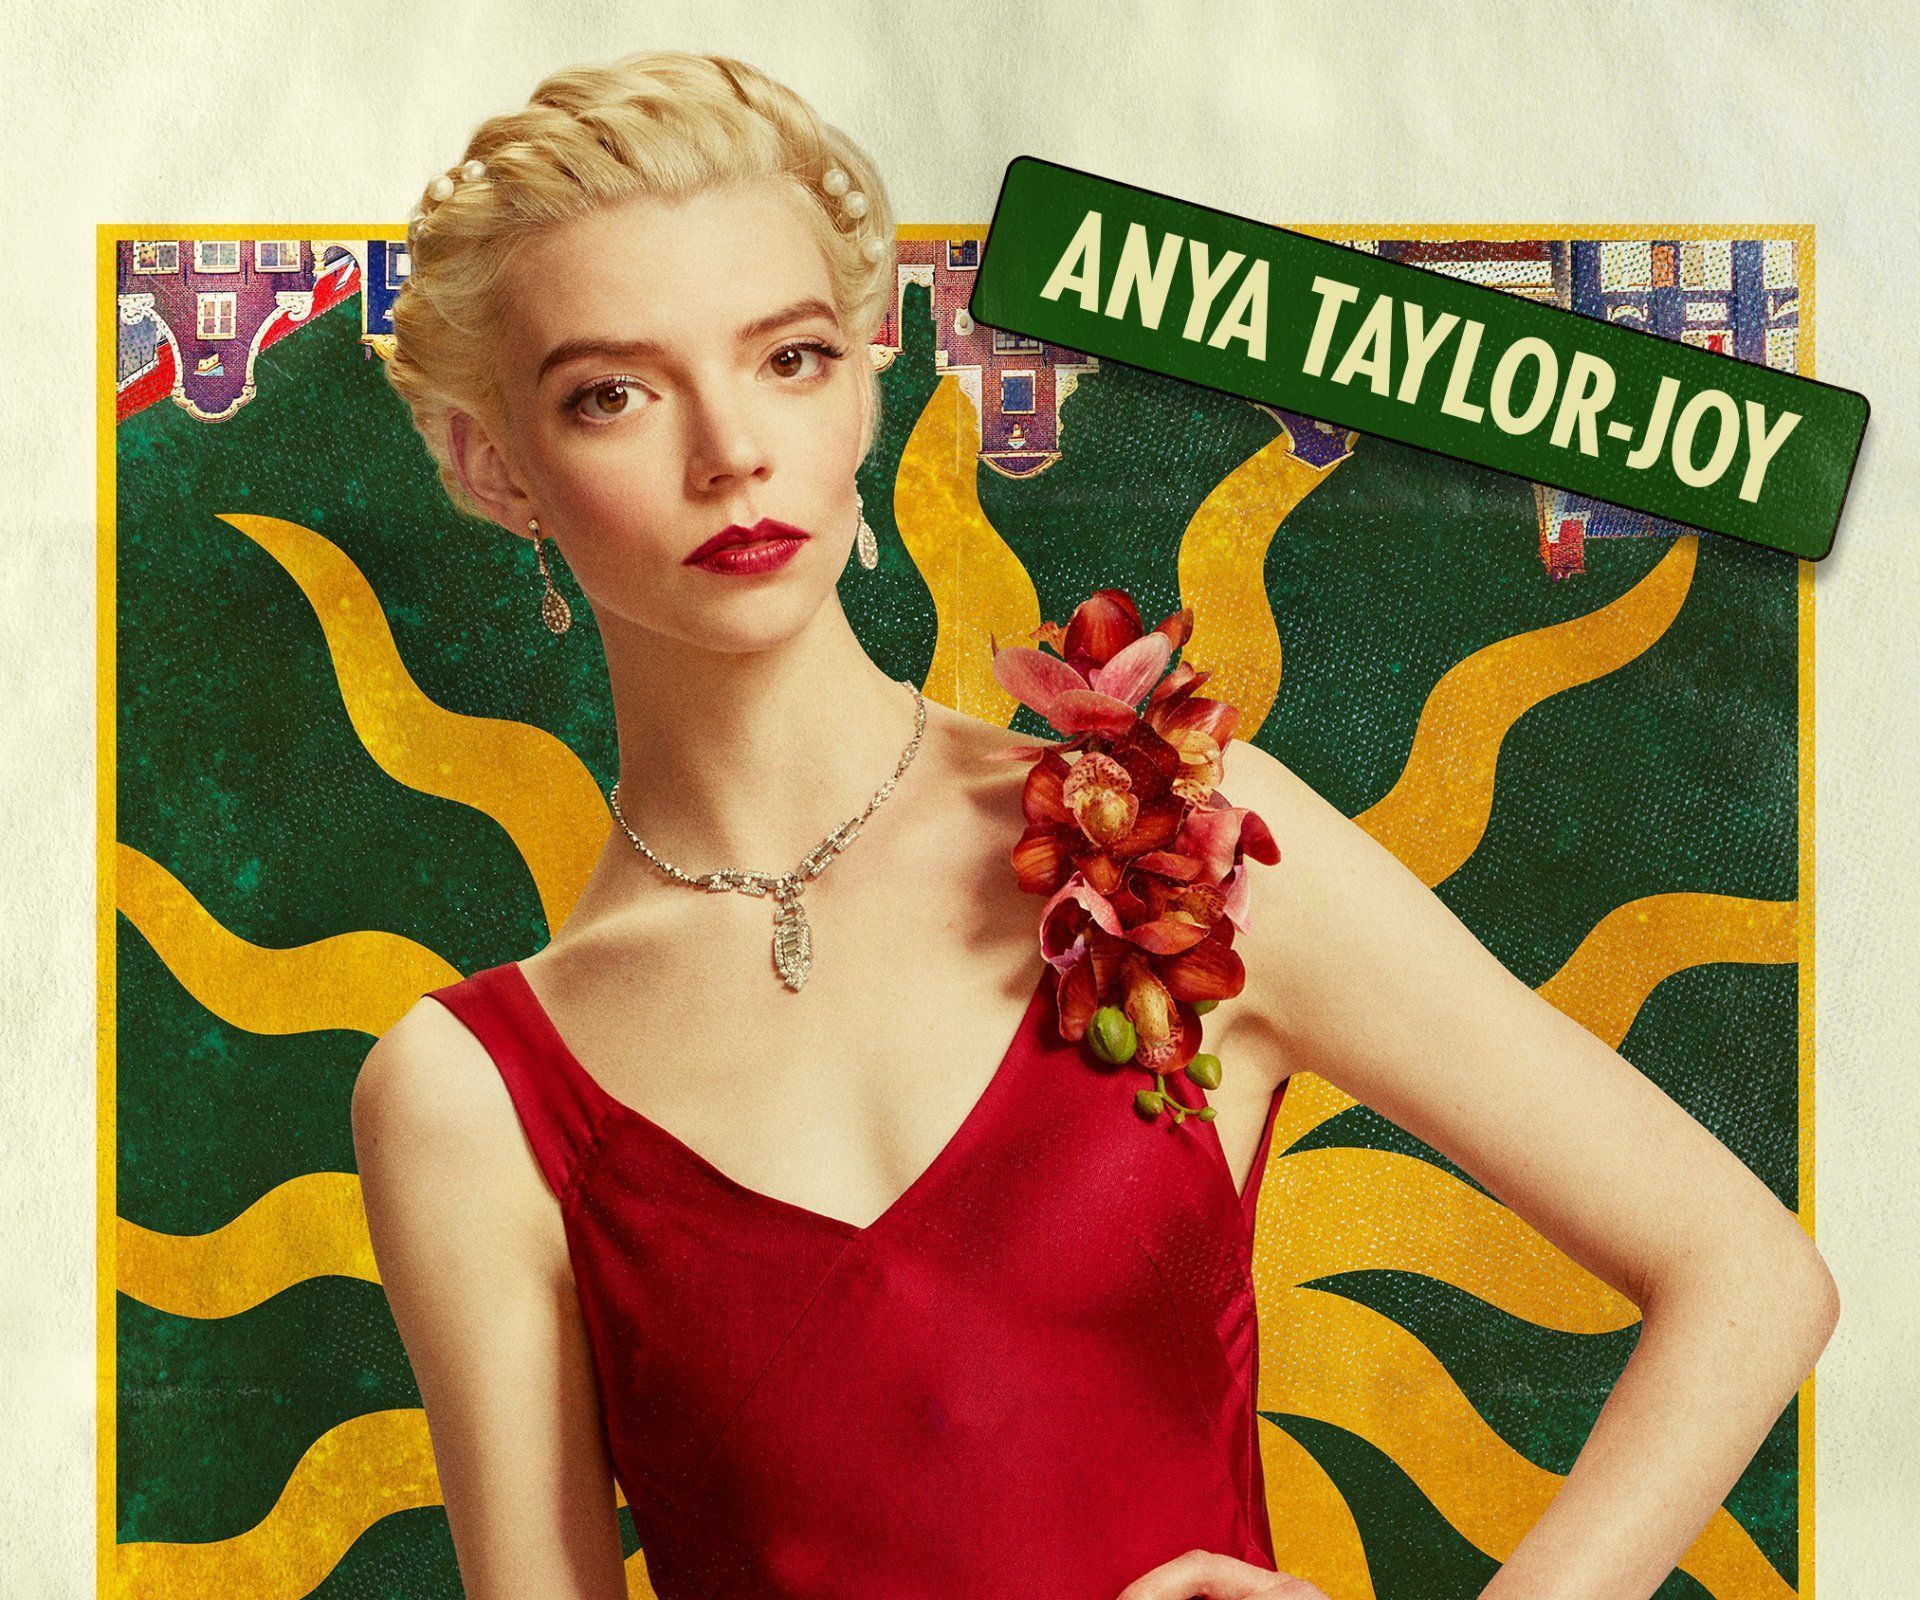 Anya Taylor Joy HD Wallpaper And Background